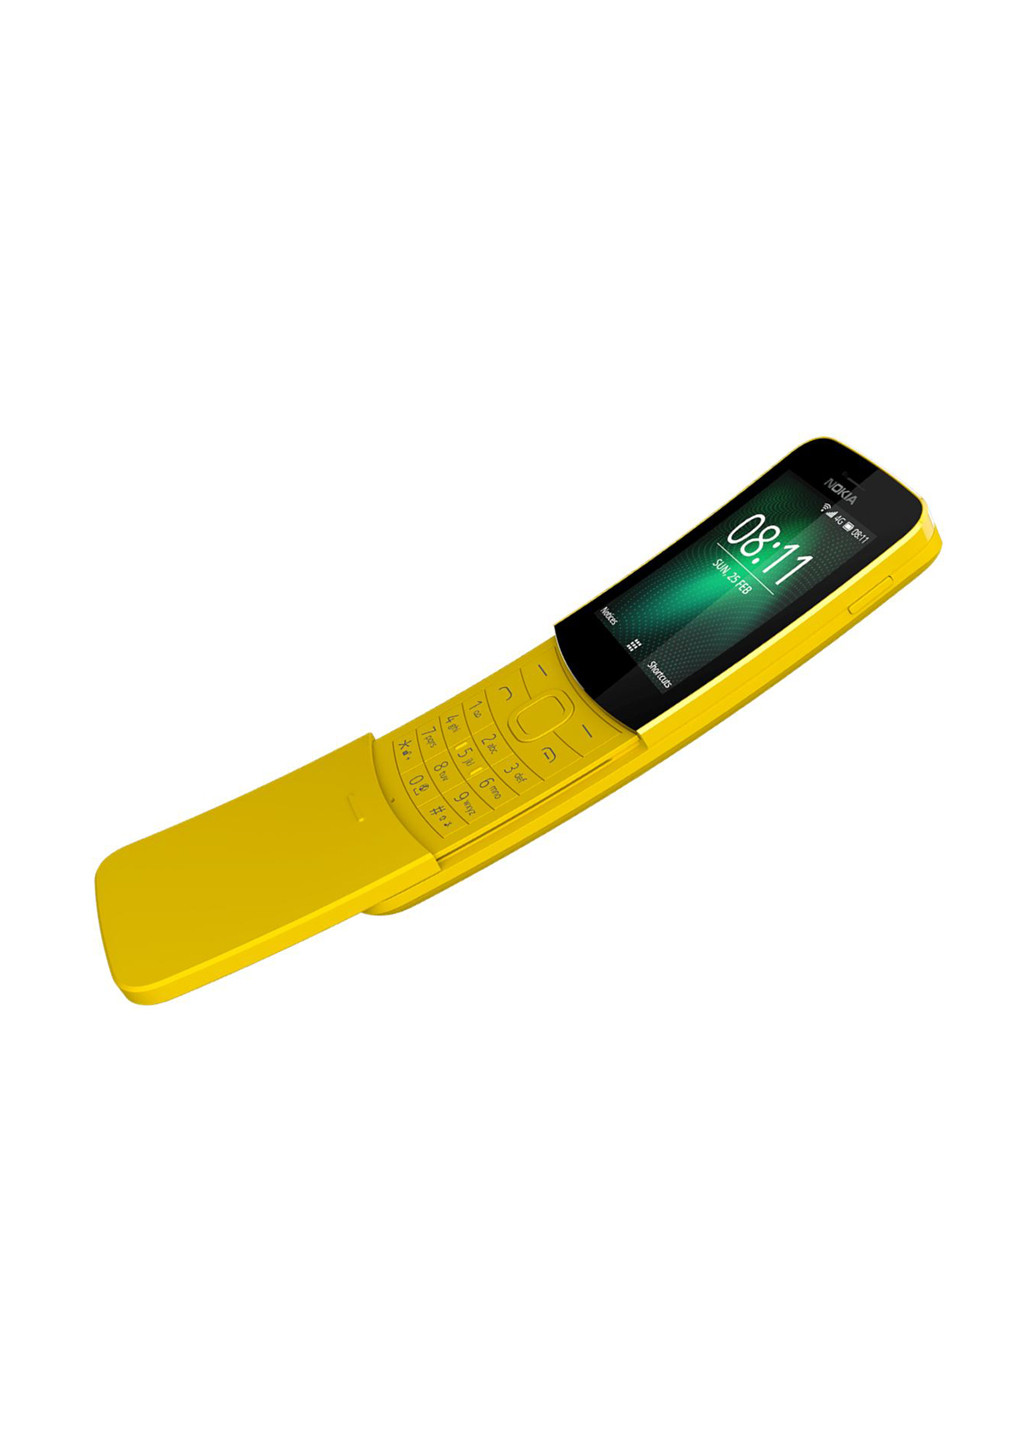 Мобільний телефон Nokia 8110 yellow (130877819)